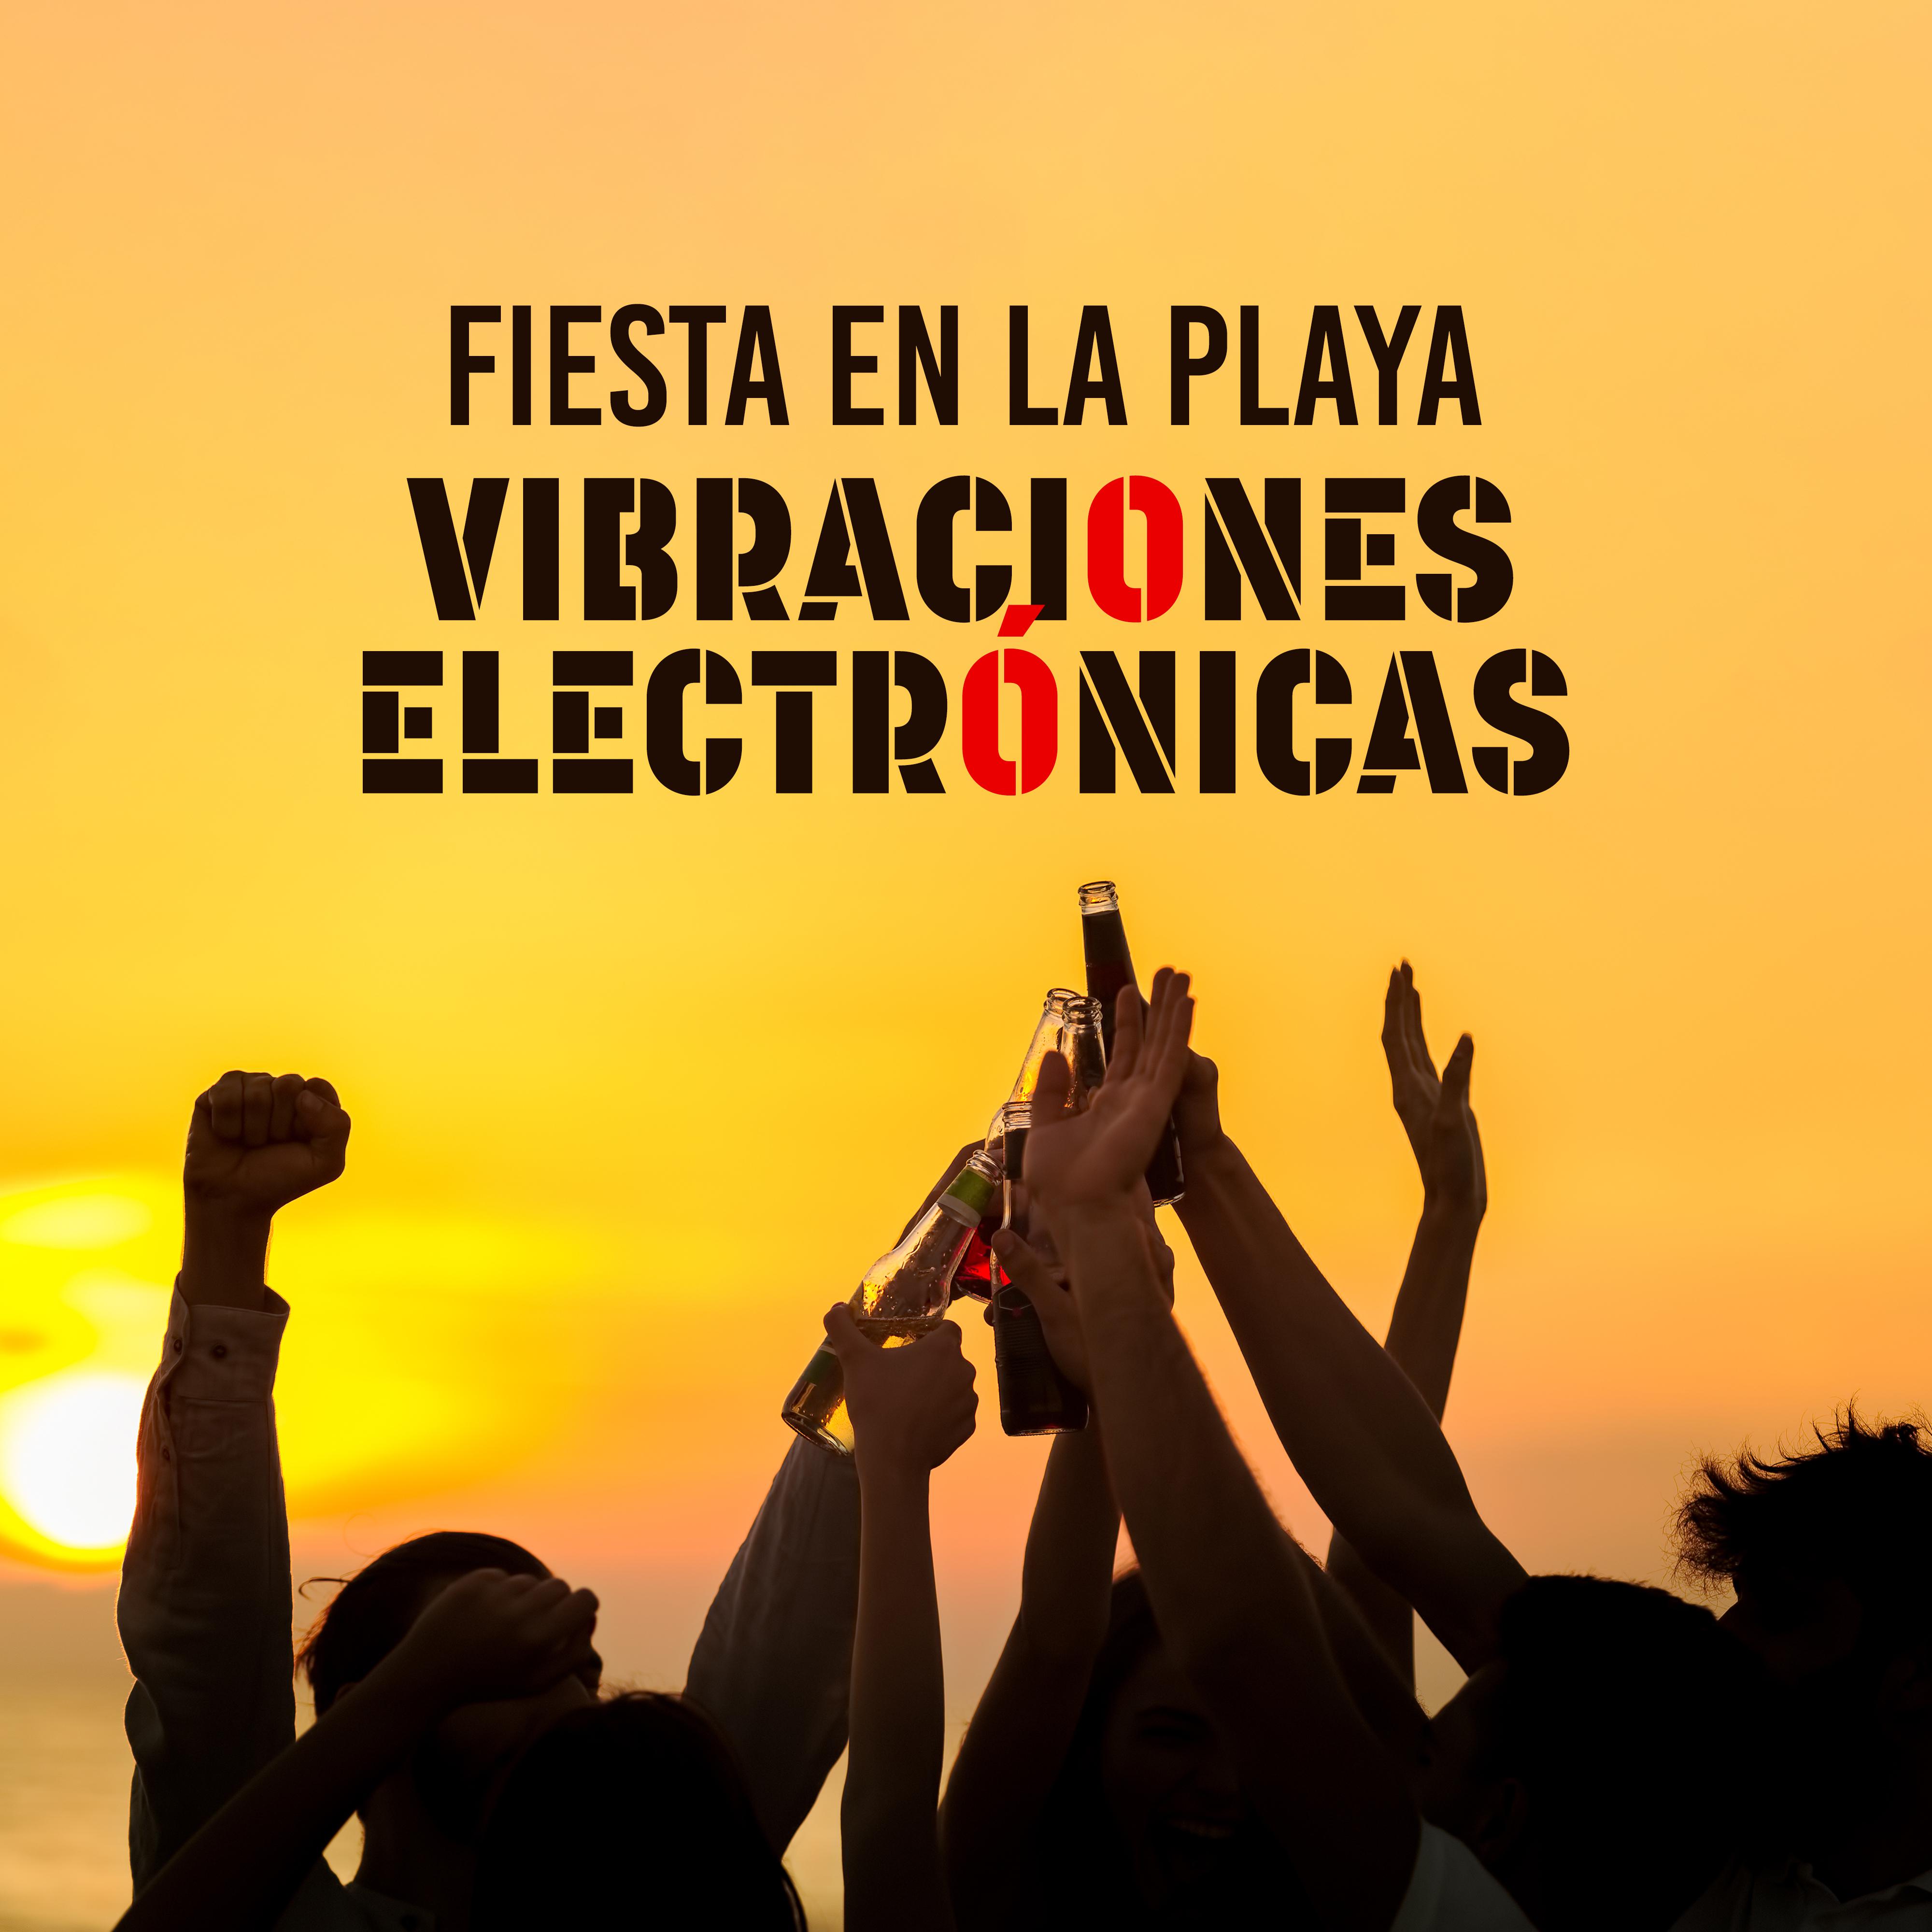 Fiesta en la Playa Vibraciones Electro nicas: Compilacio n de Mu sica Chillout 2019